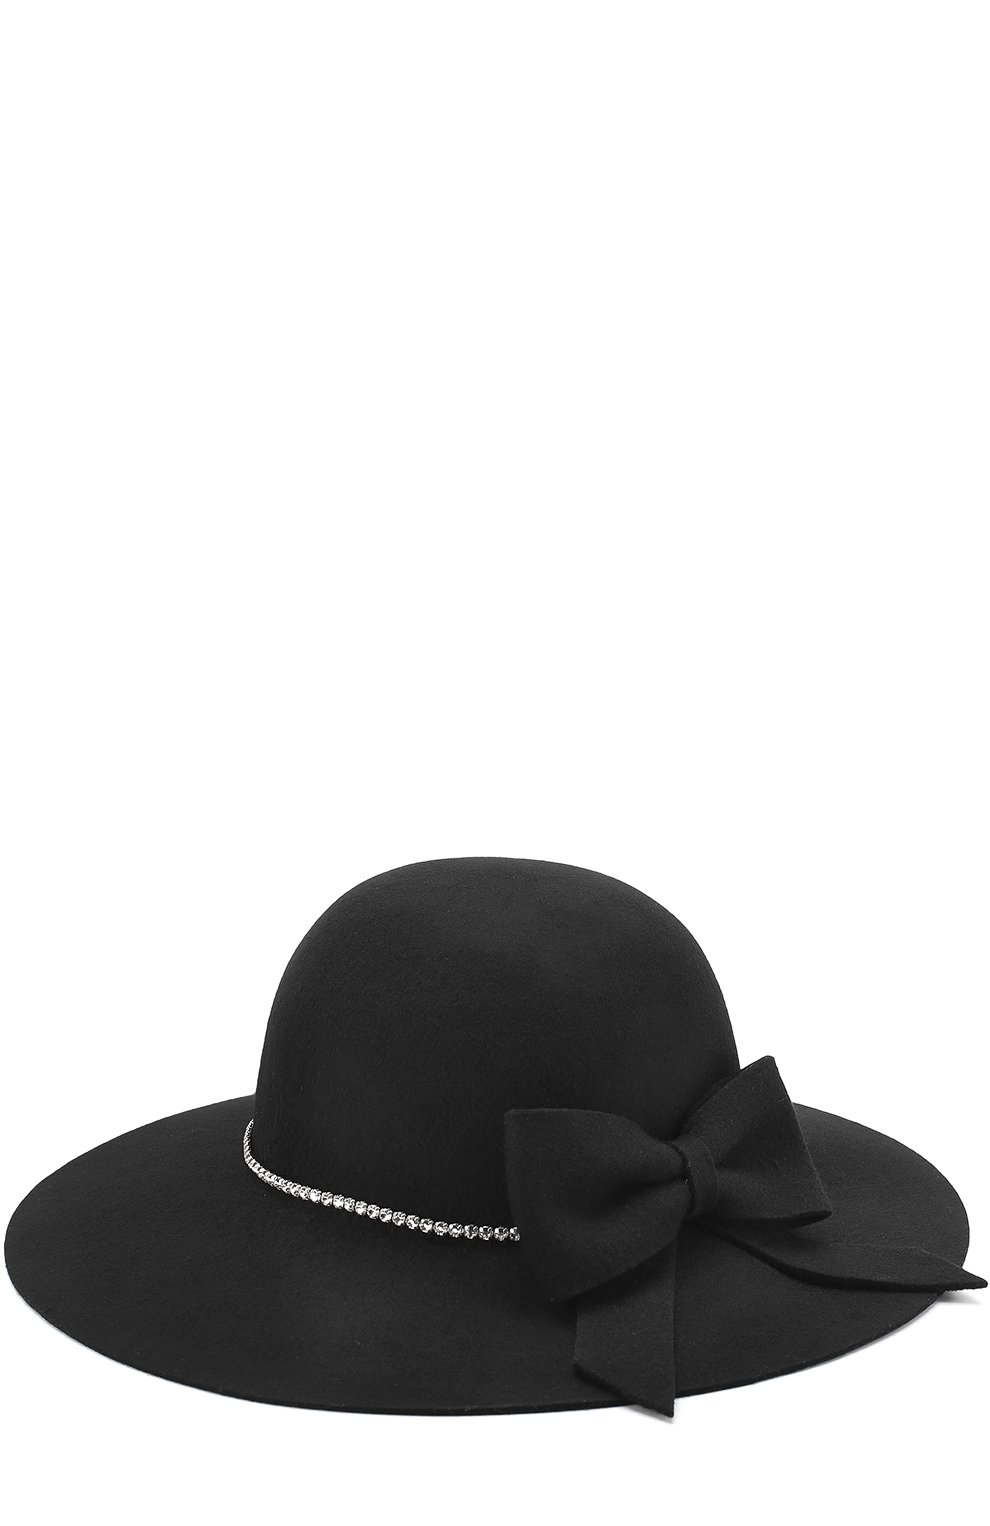 Шляпы Monnalisa, Шляпа с бантом и стразами Monnalisa, Италия, Чёрный, 2307755  - купить